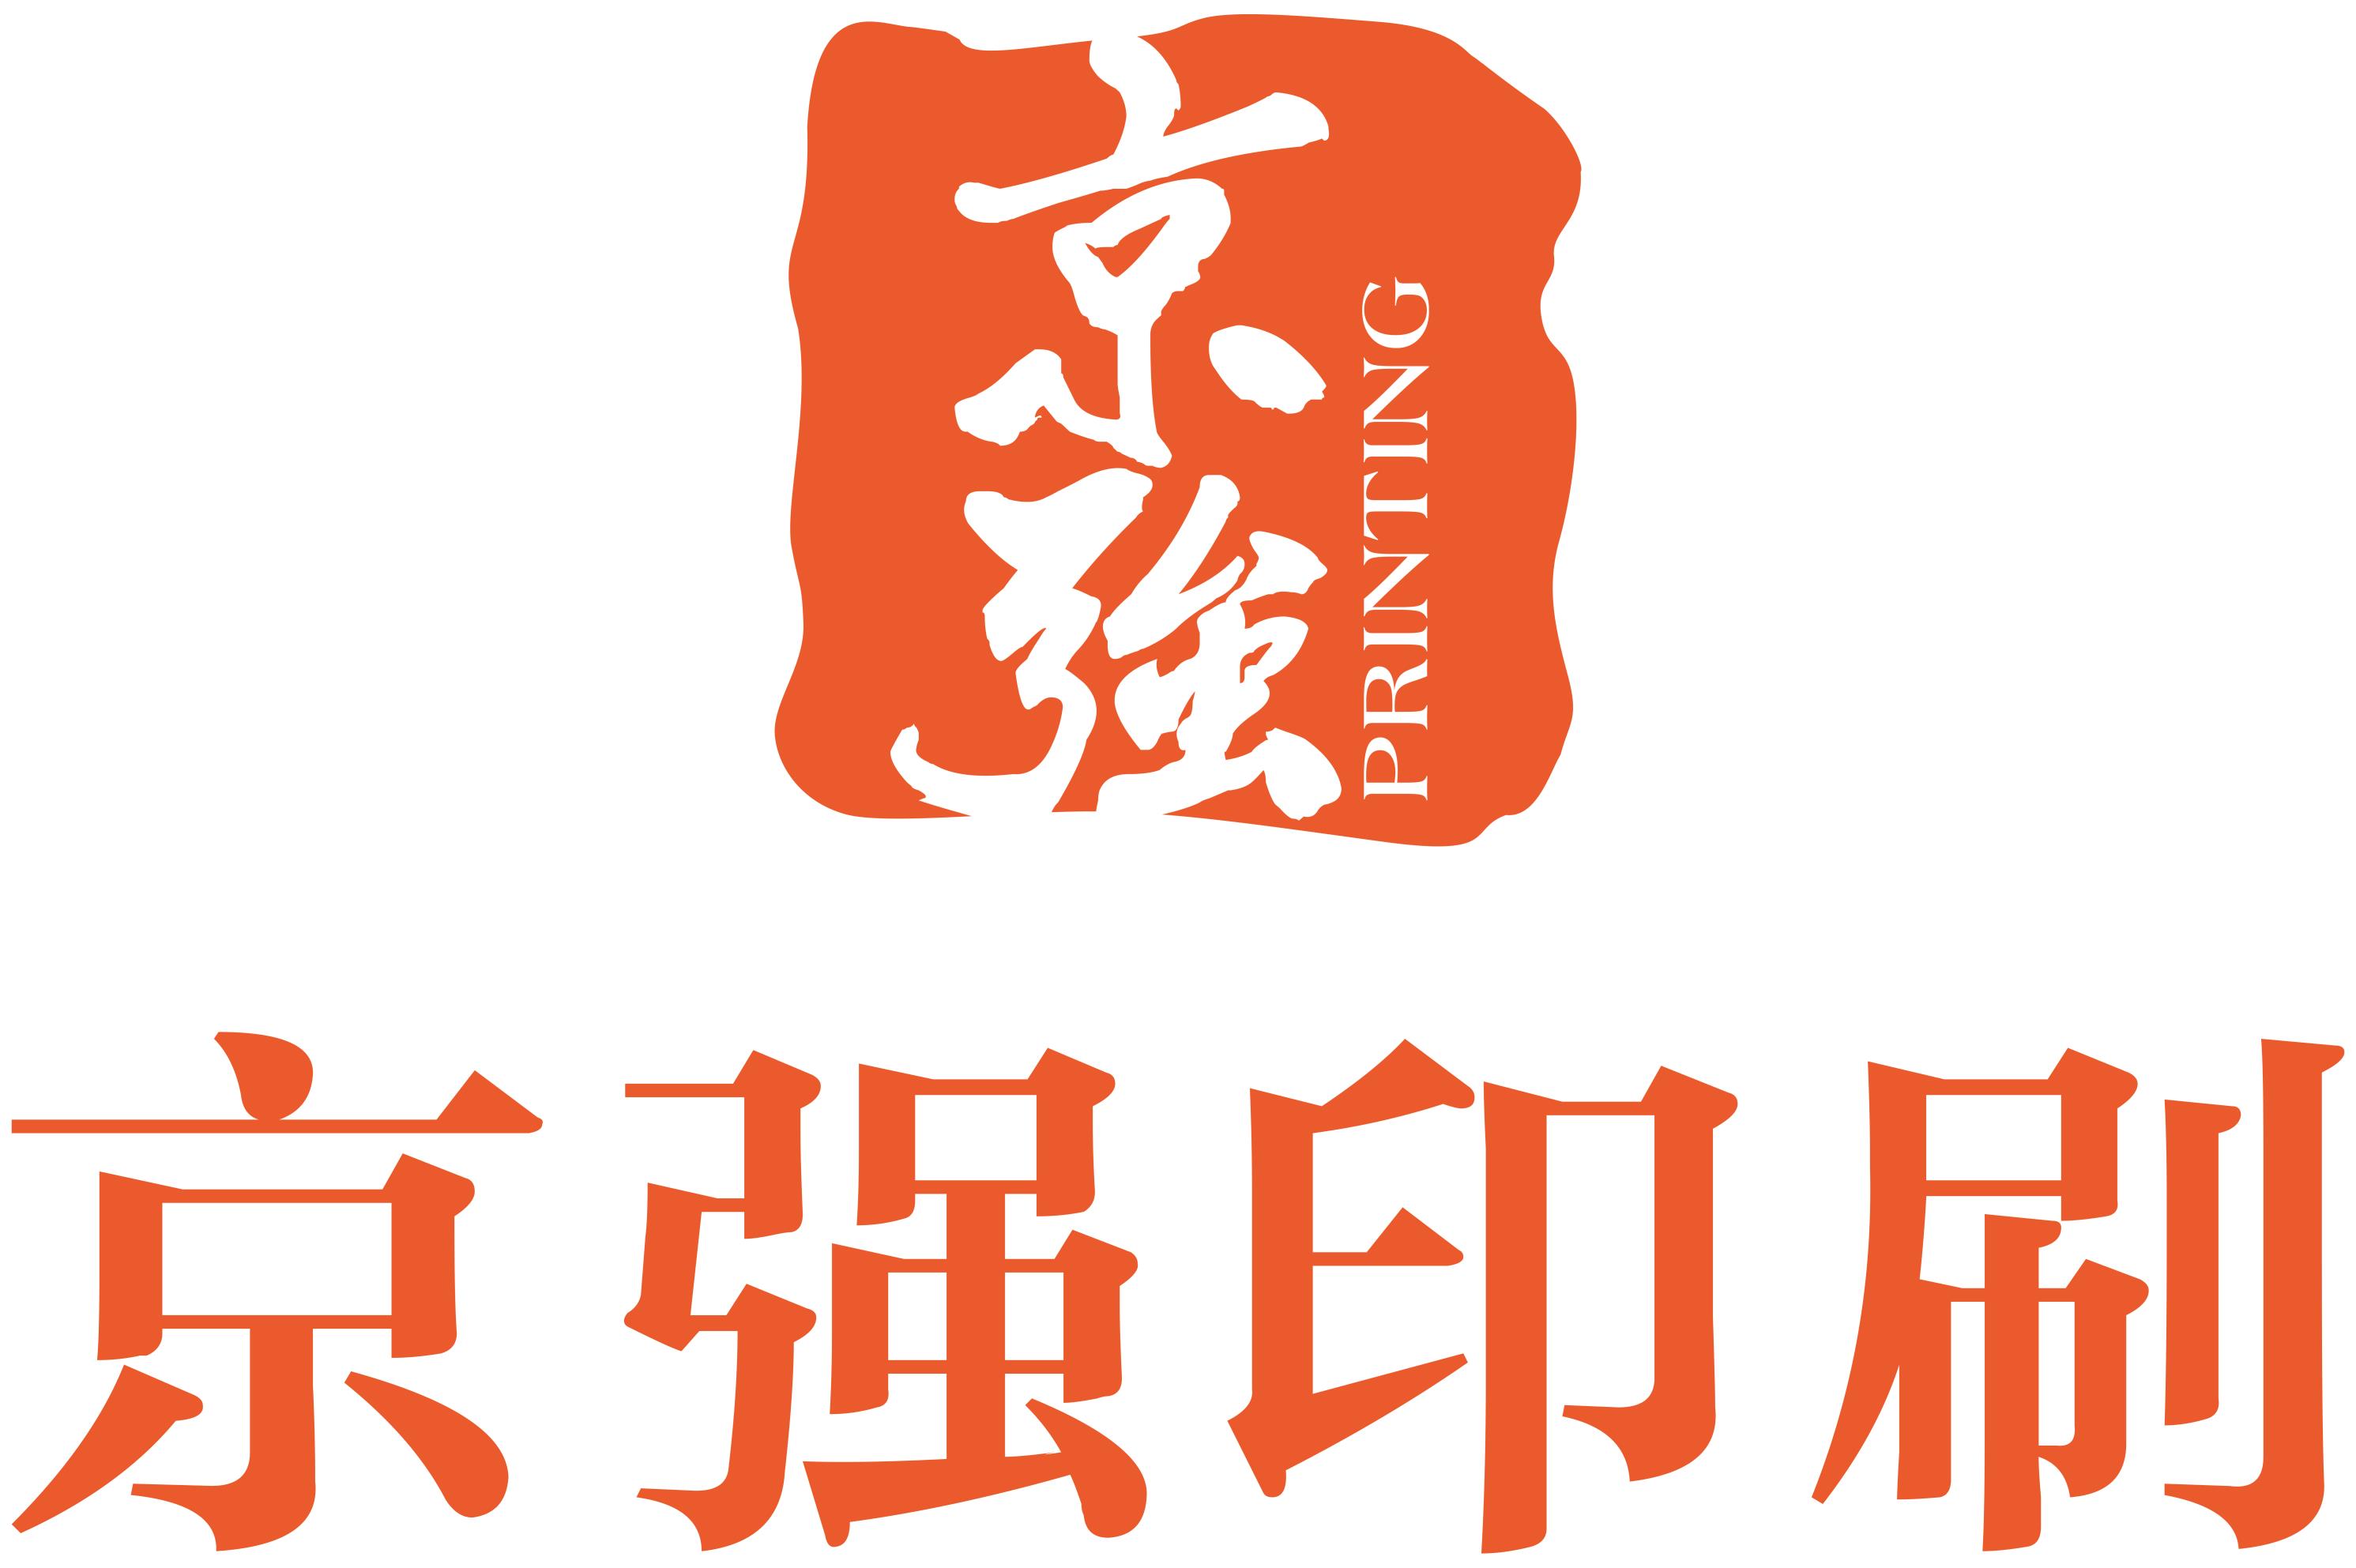 上海京强印刷科技有限公司的企业标志